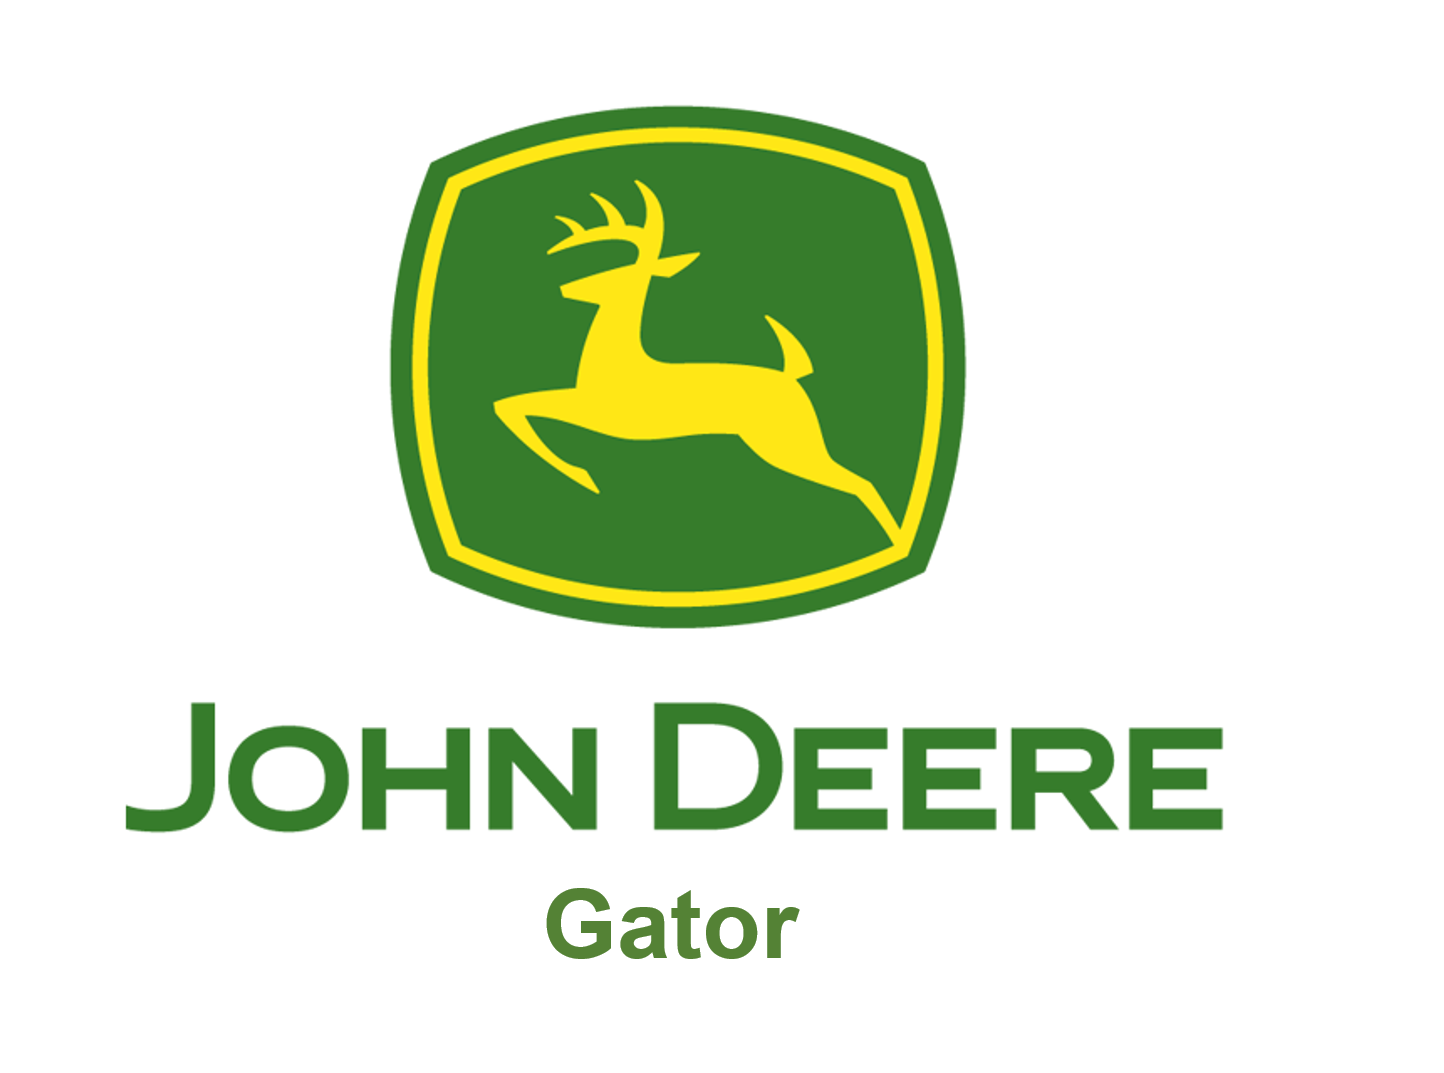 John Deere Gator